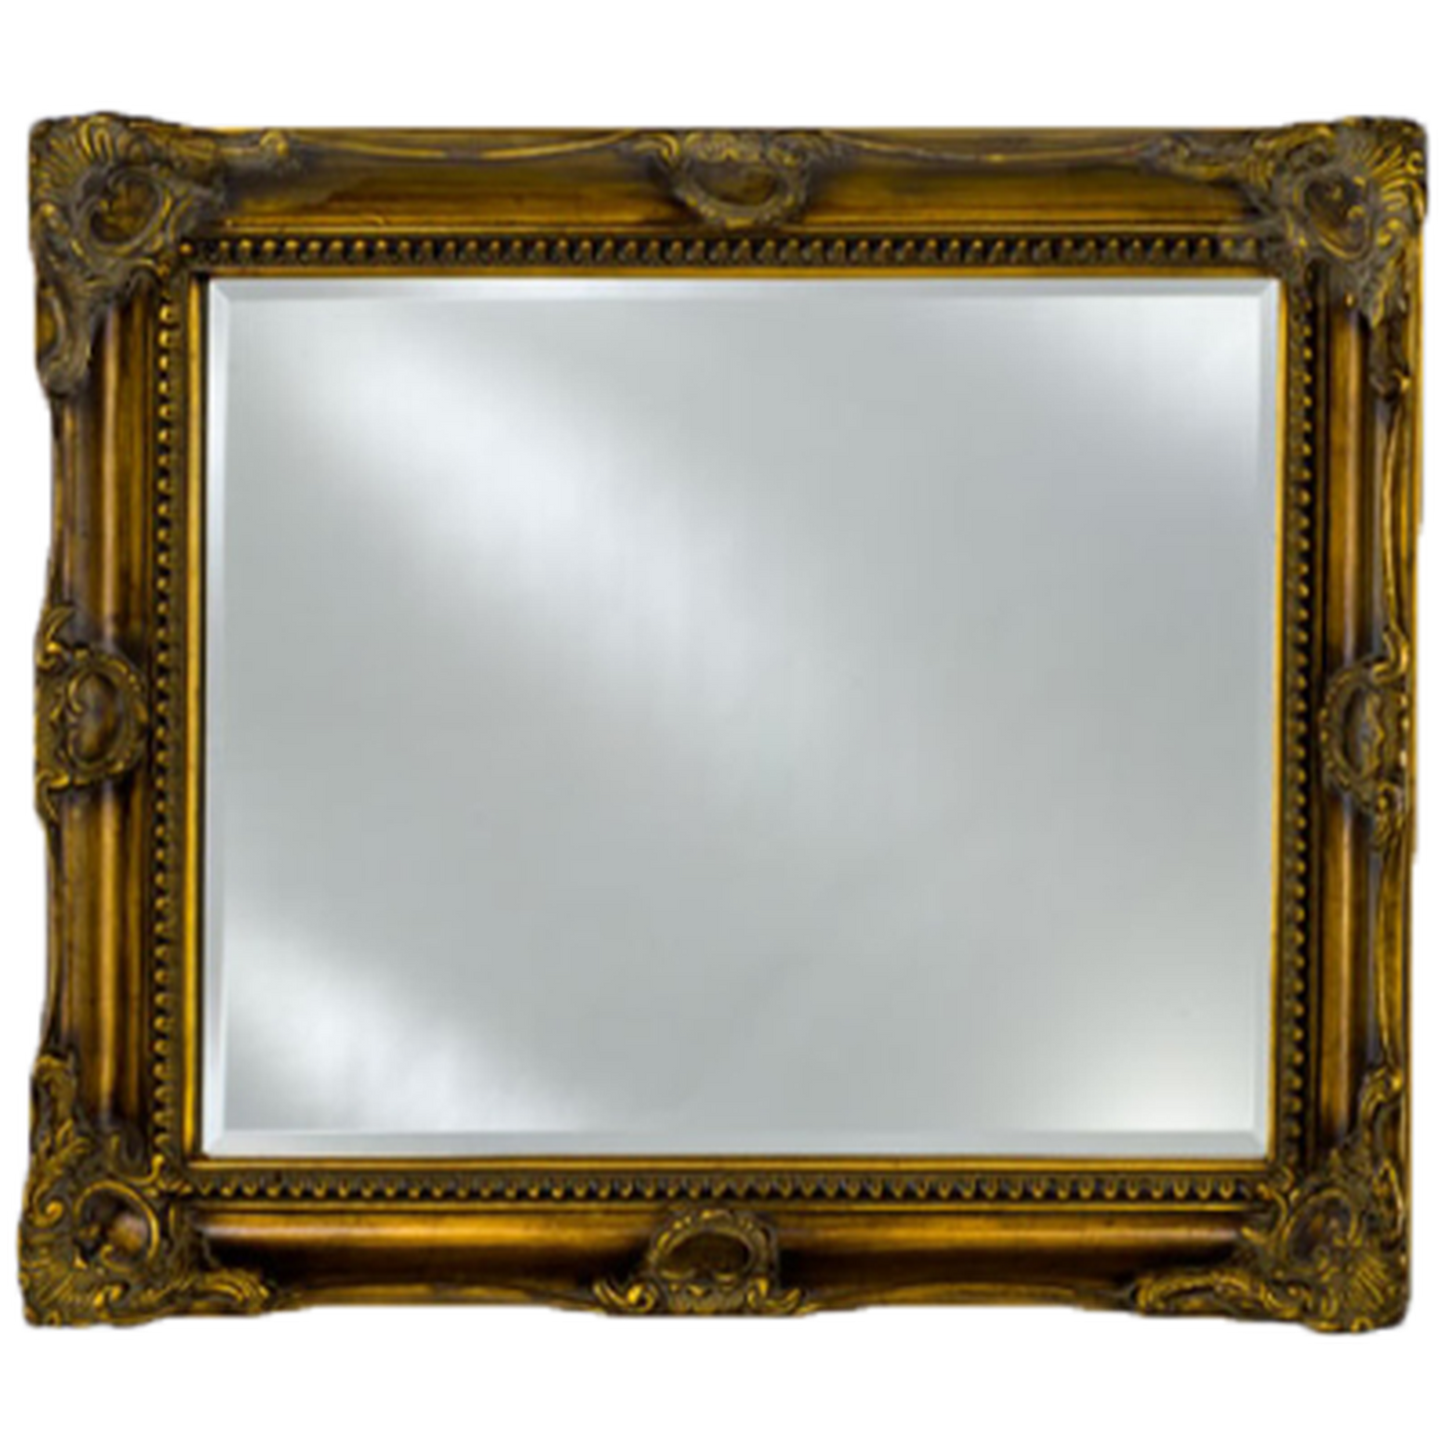 Afina Estate 42" x 34" Antique Burnished Gold Vanderbilt Royale Frame With 1" Bevel Mirror